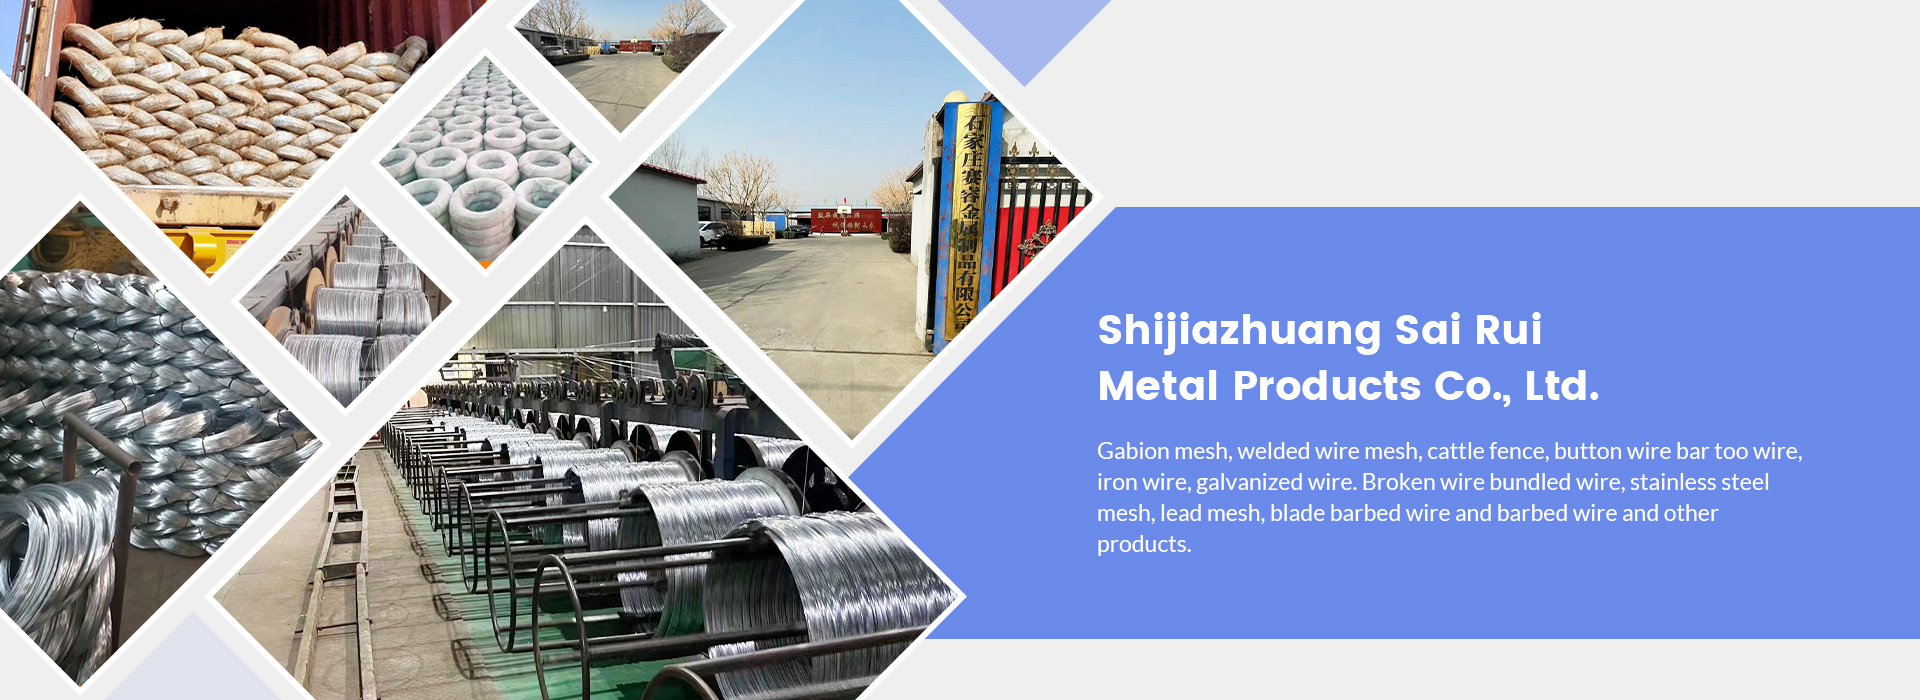 Shijiazhuang Sairuimetal Product Co., Ltd.